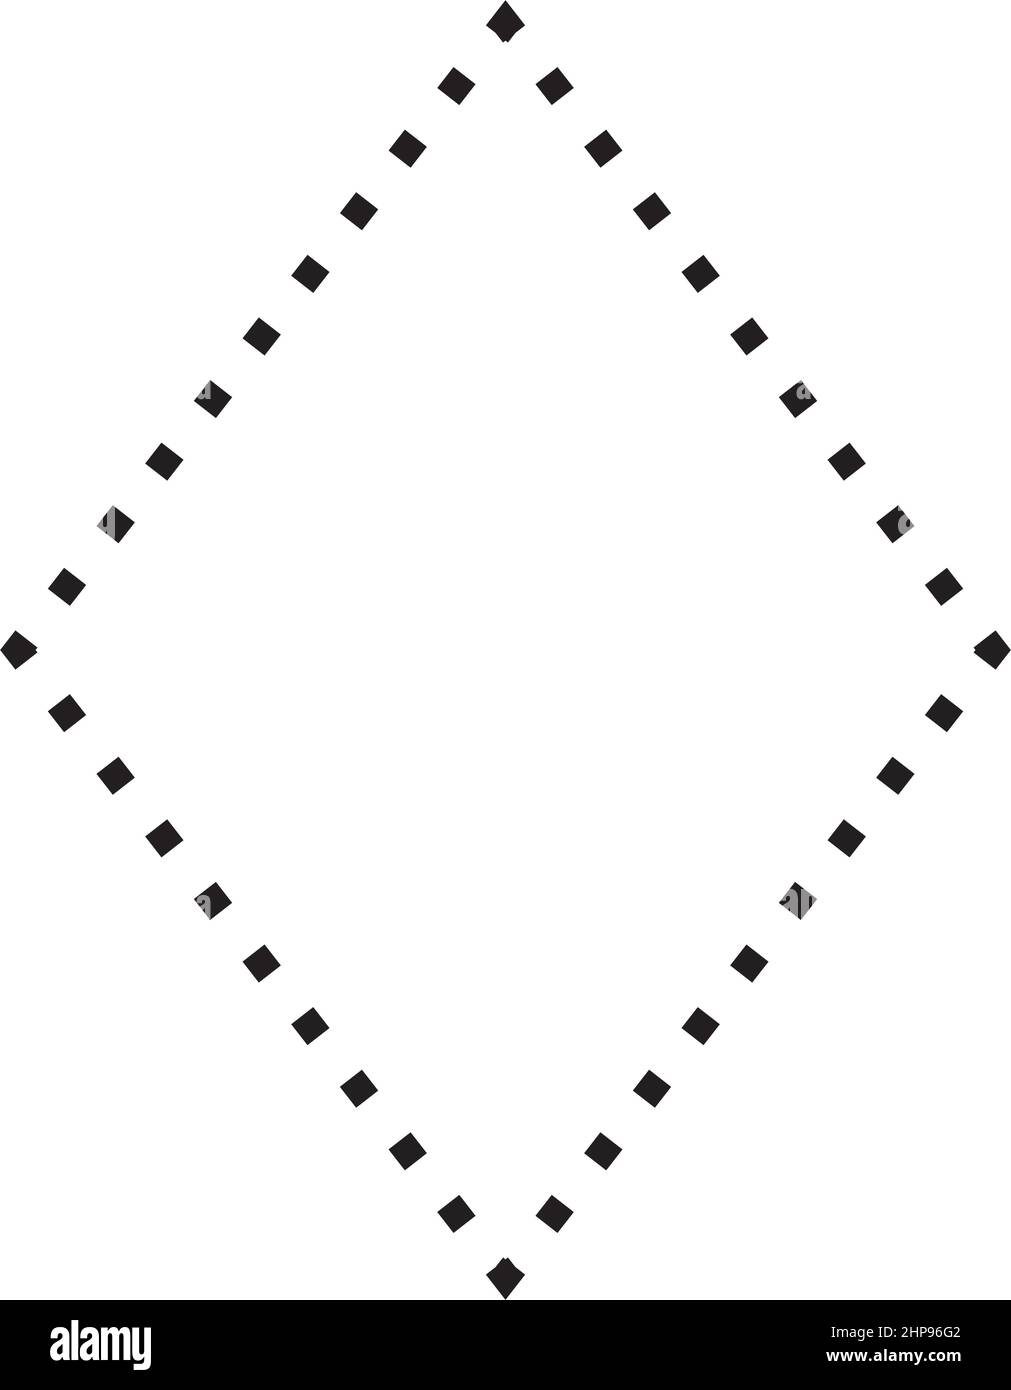 Rhombus-Symbol gestrichelte Form Vektor-Symbol für kreative Grafik-Design-ui-Element in einem Piktogramm Illustration Stock Vektor